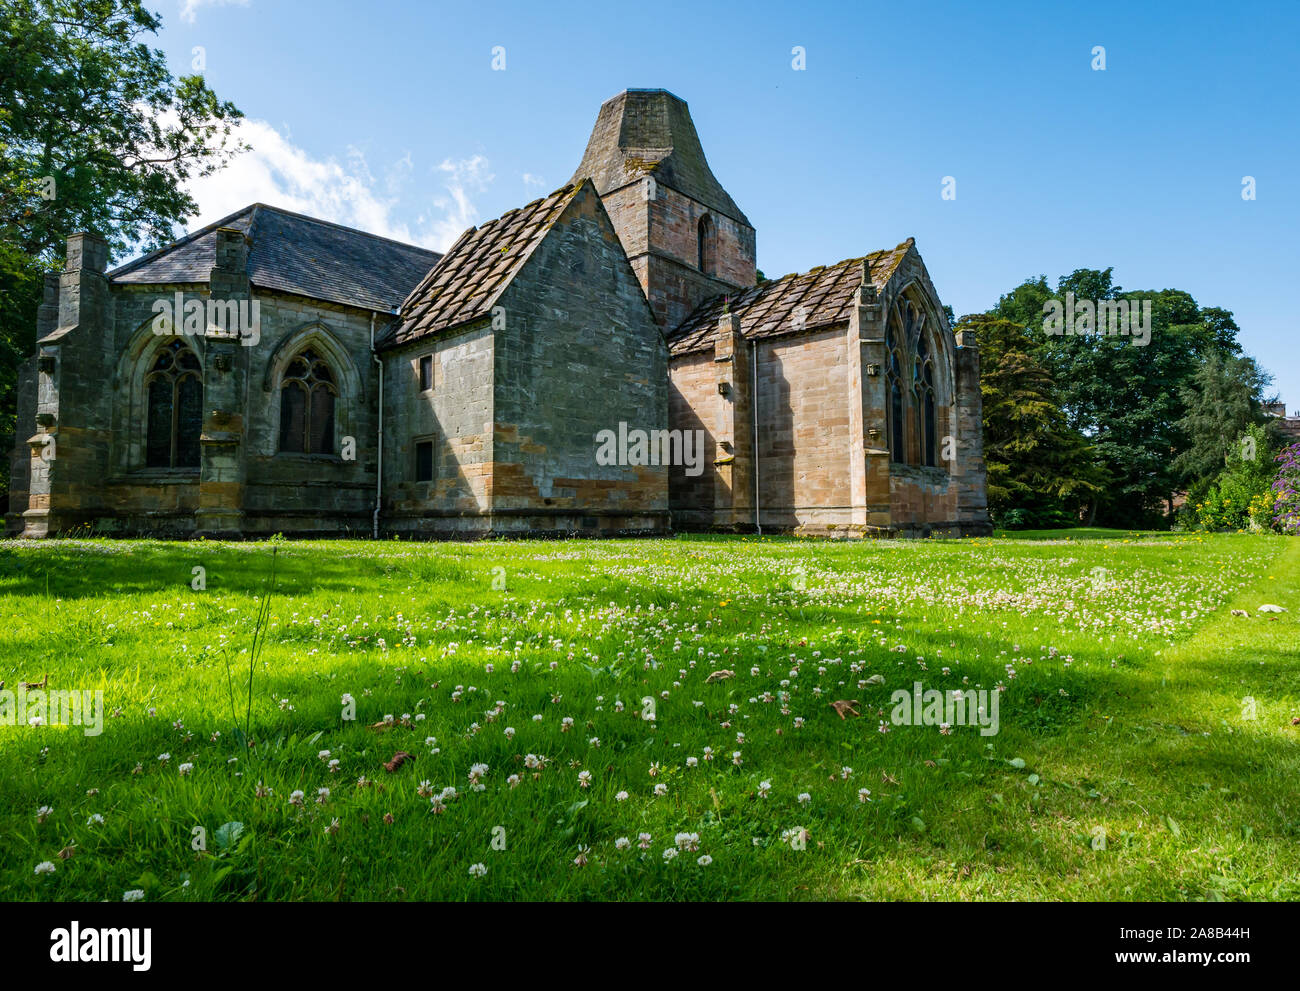 Chapelle collégiale Seton, église du 16ème siècle, East Lothian, Scotland, UK Banque D'Images